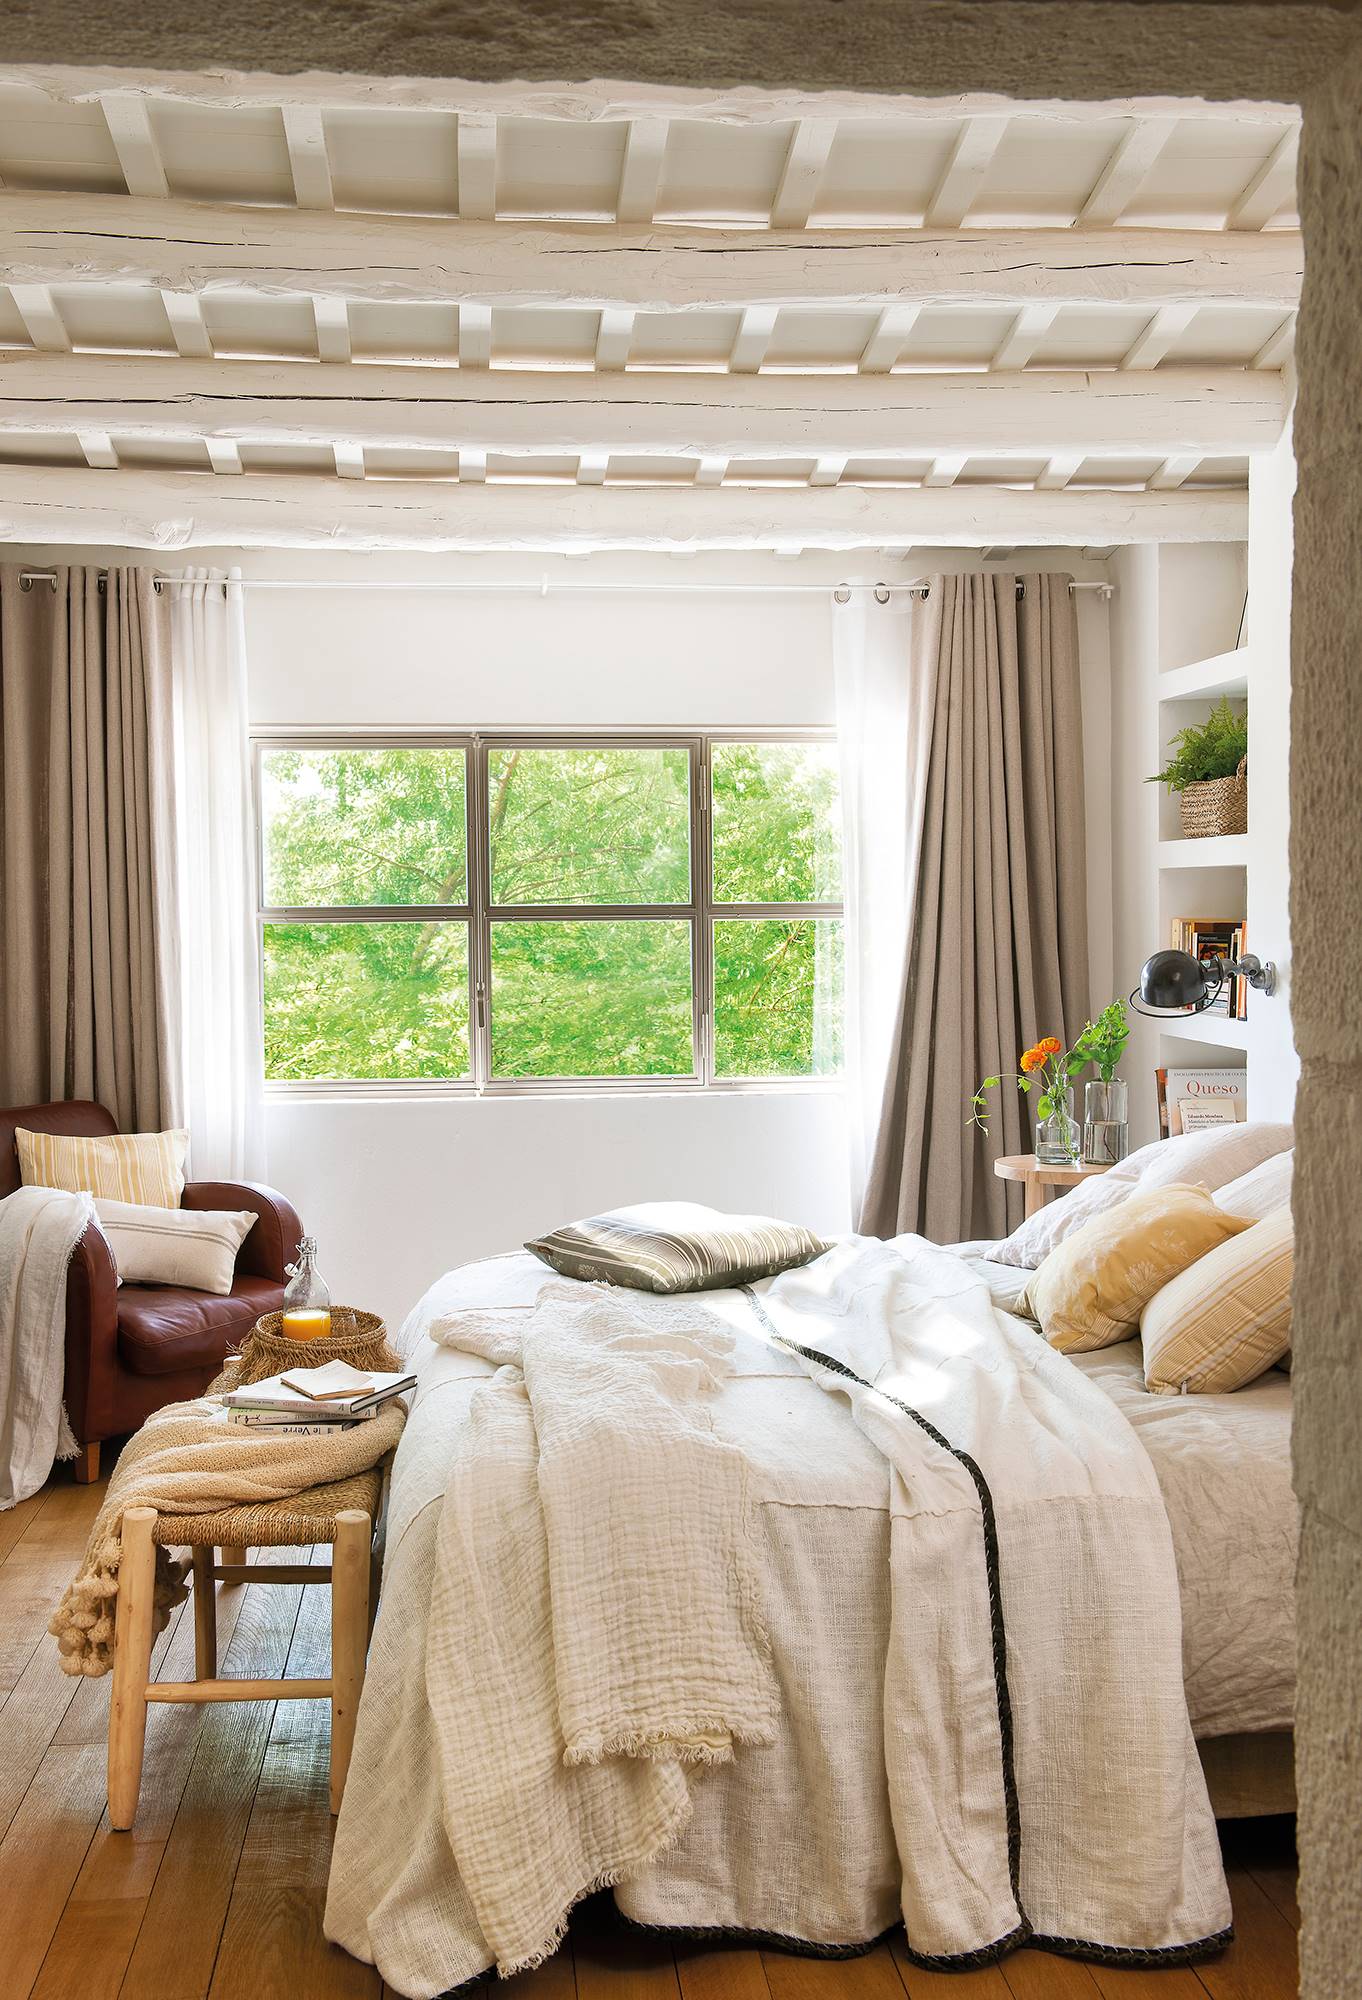 Dormitorio de primavera en blanco con vigas de madera y cortinas en gris.